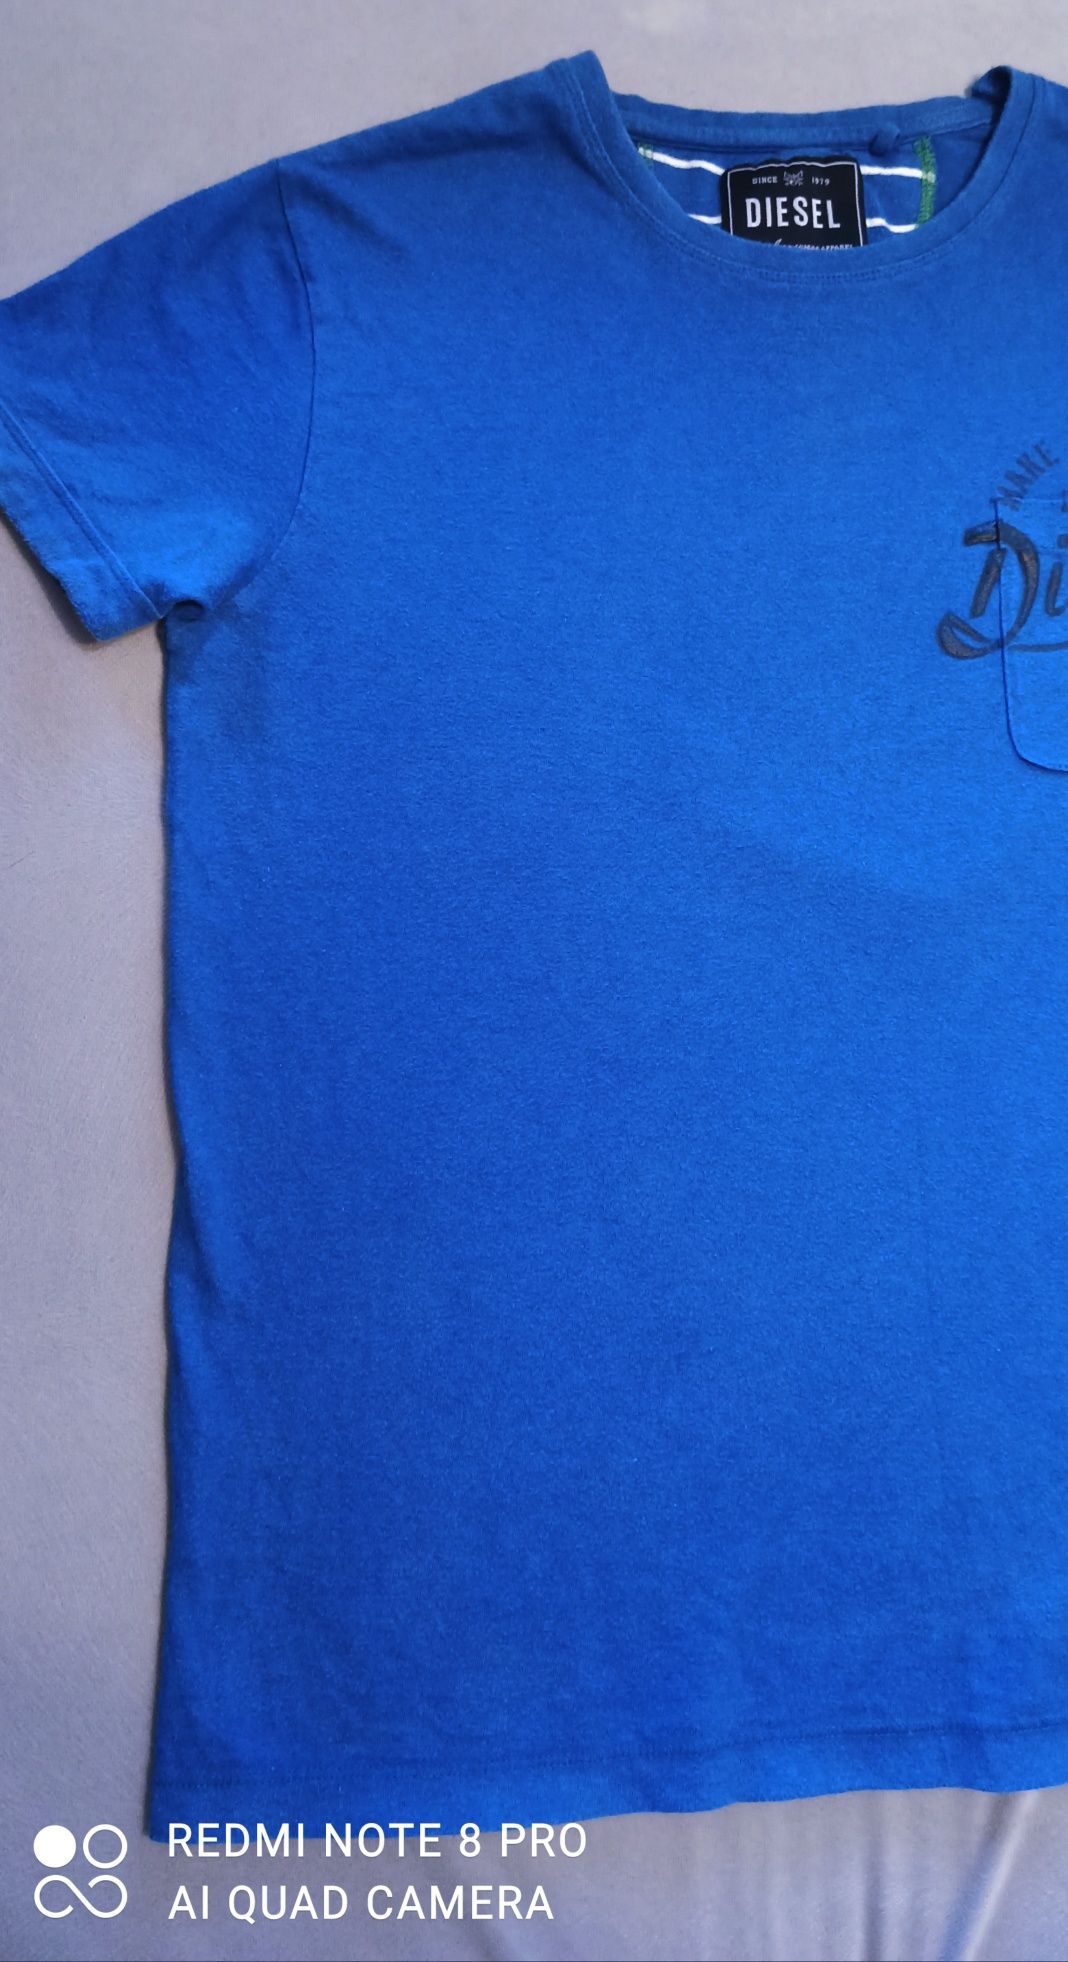 DIESEL  , niebieski  t-shirt, koszulka  rozmiar   S